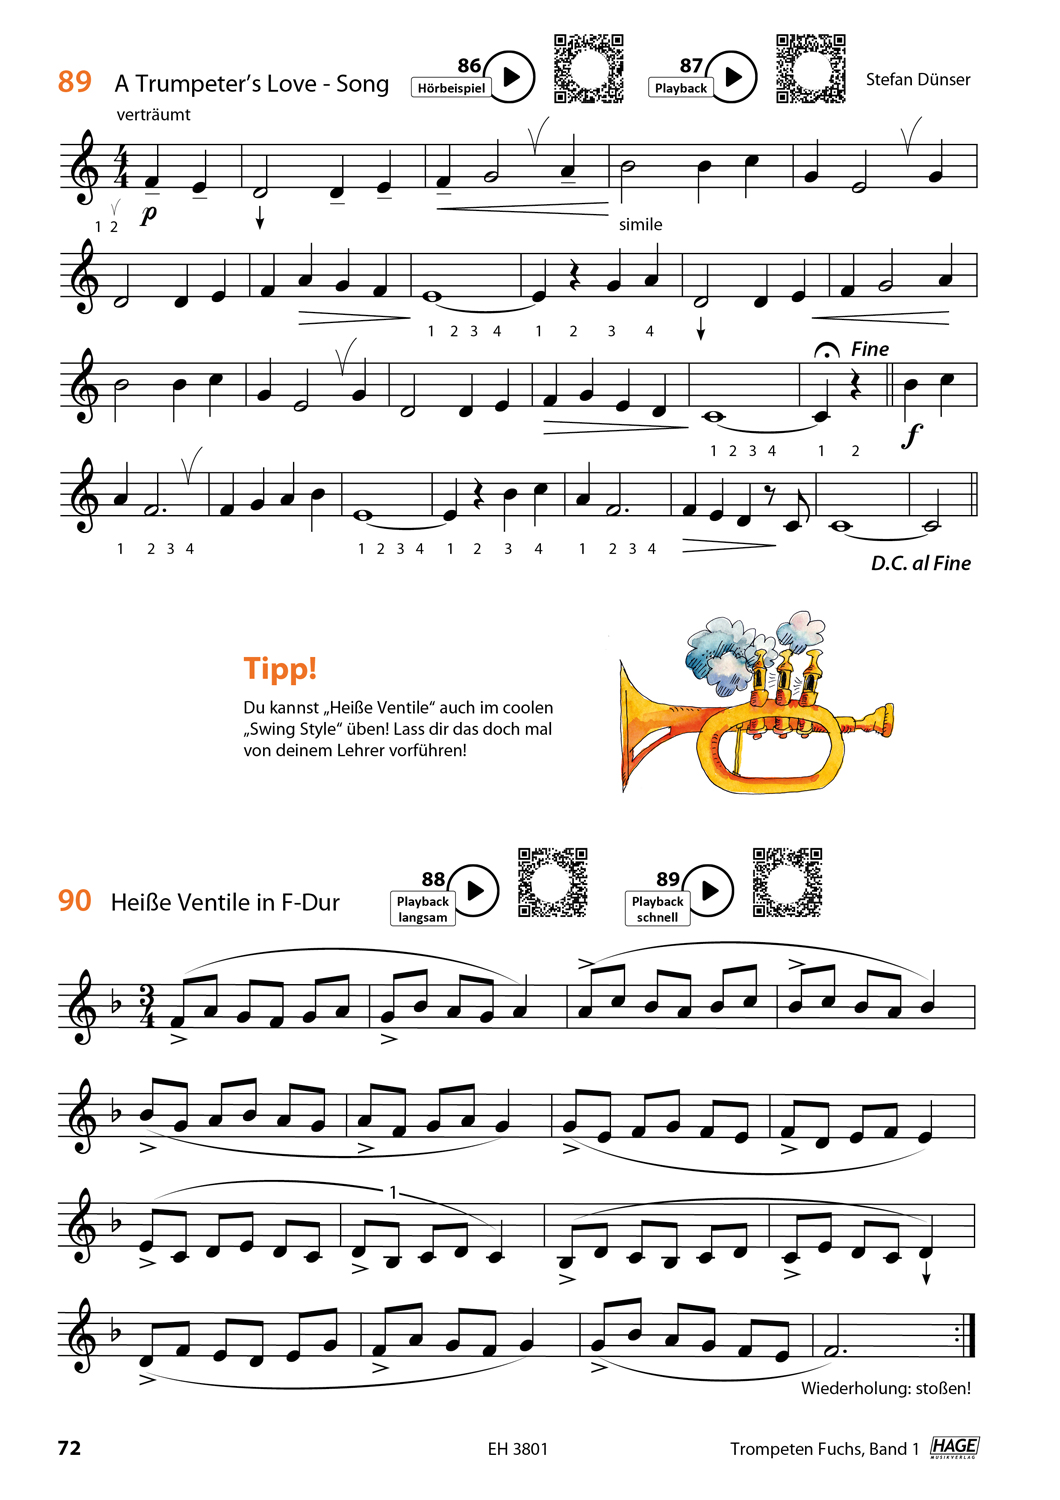 Trompeten Fuchs Band 1 Seiten 8